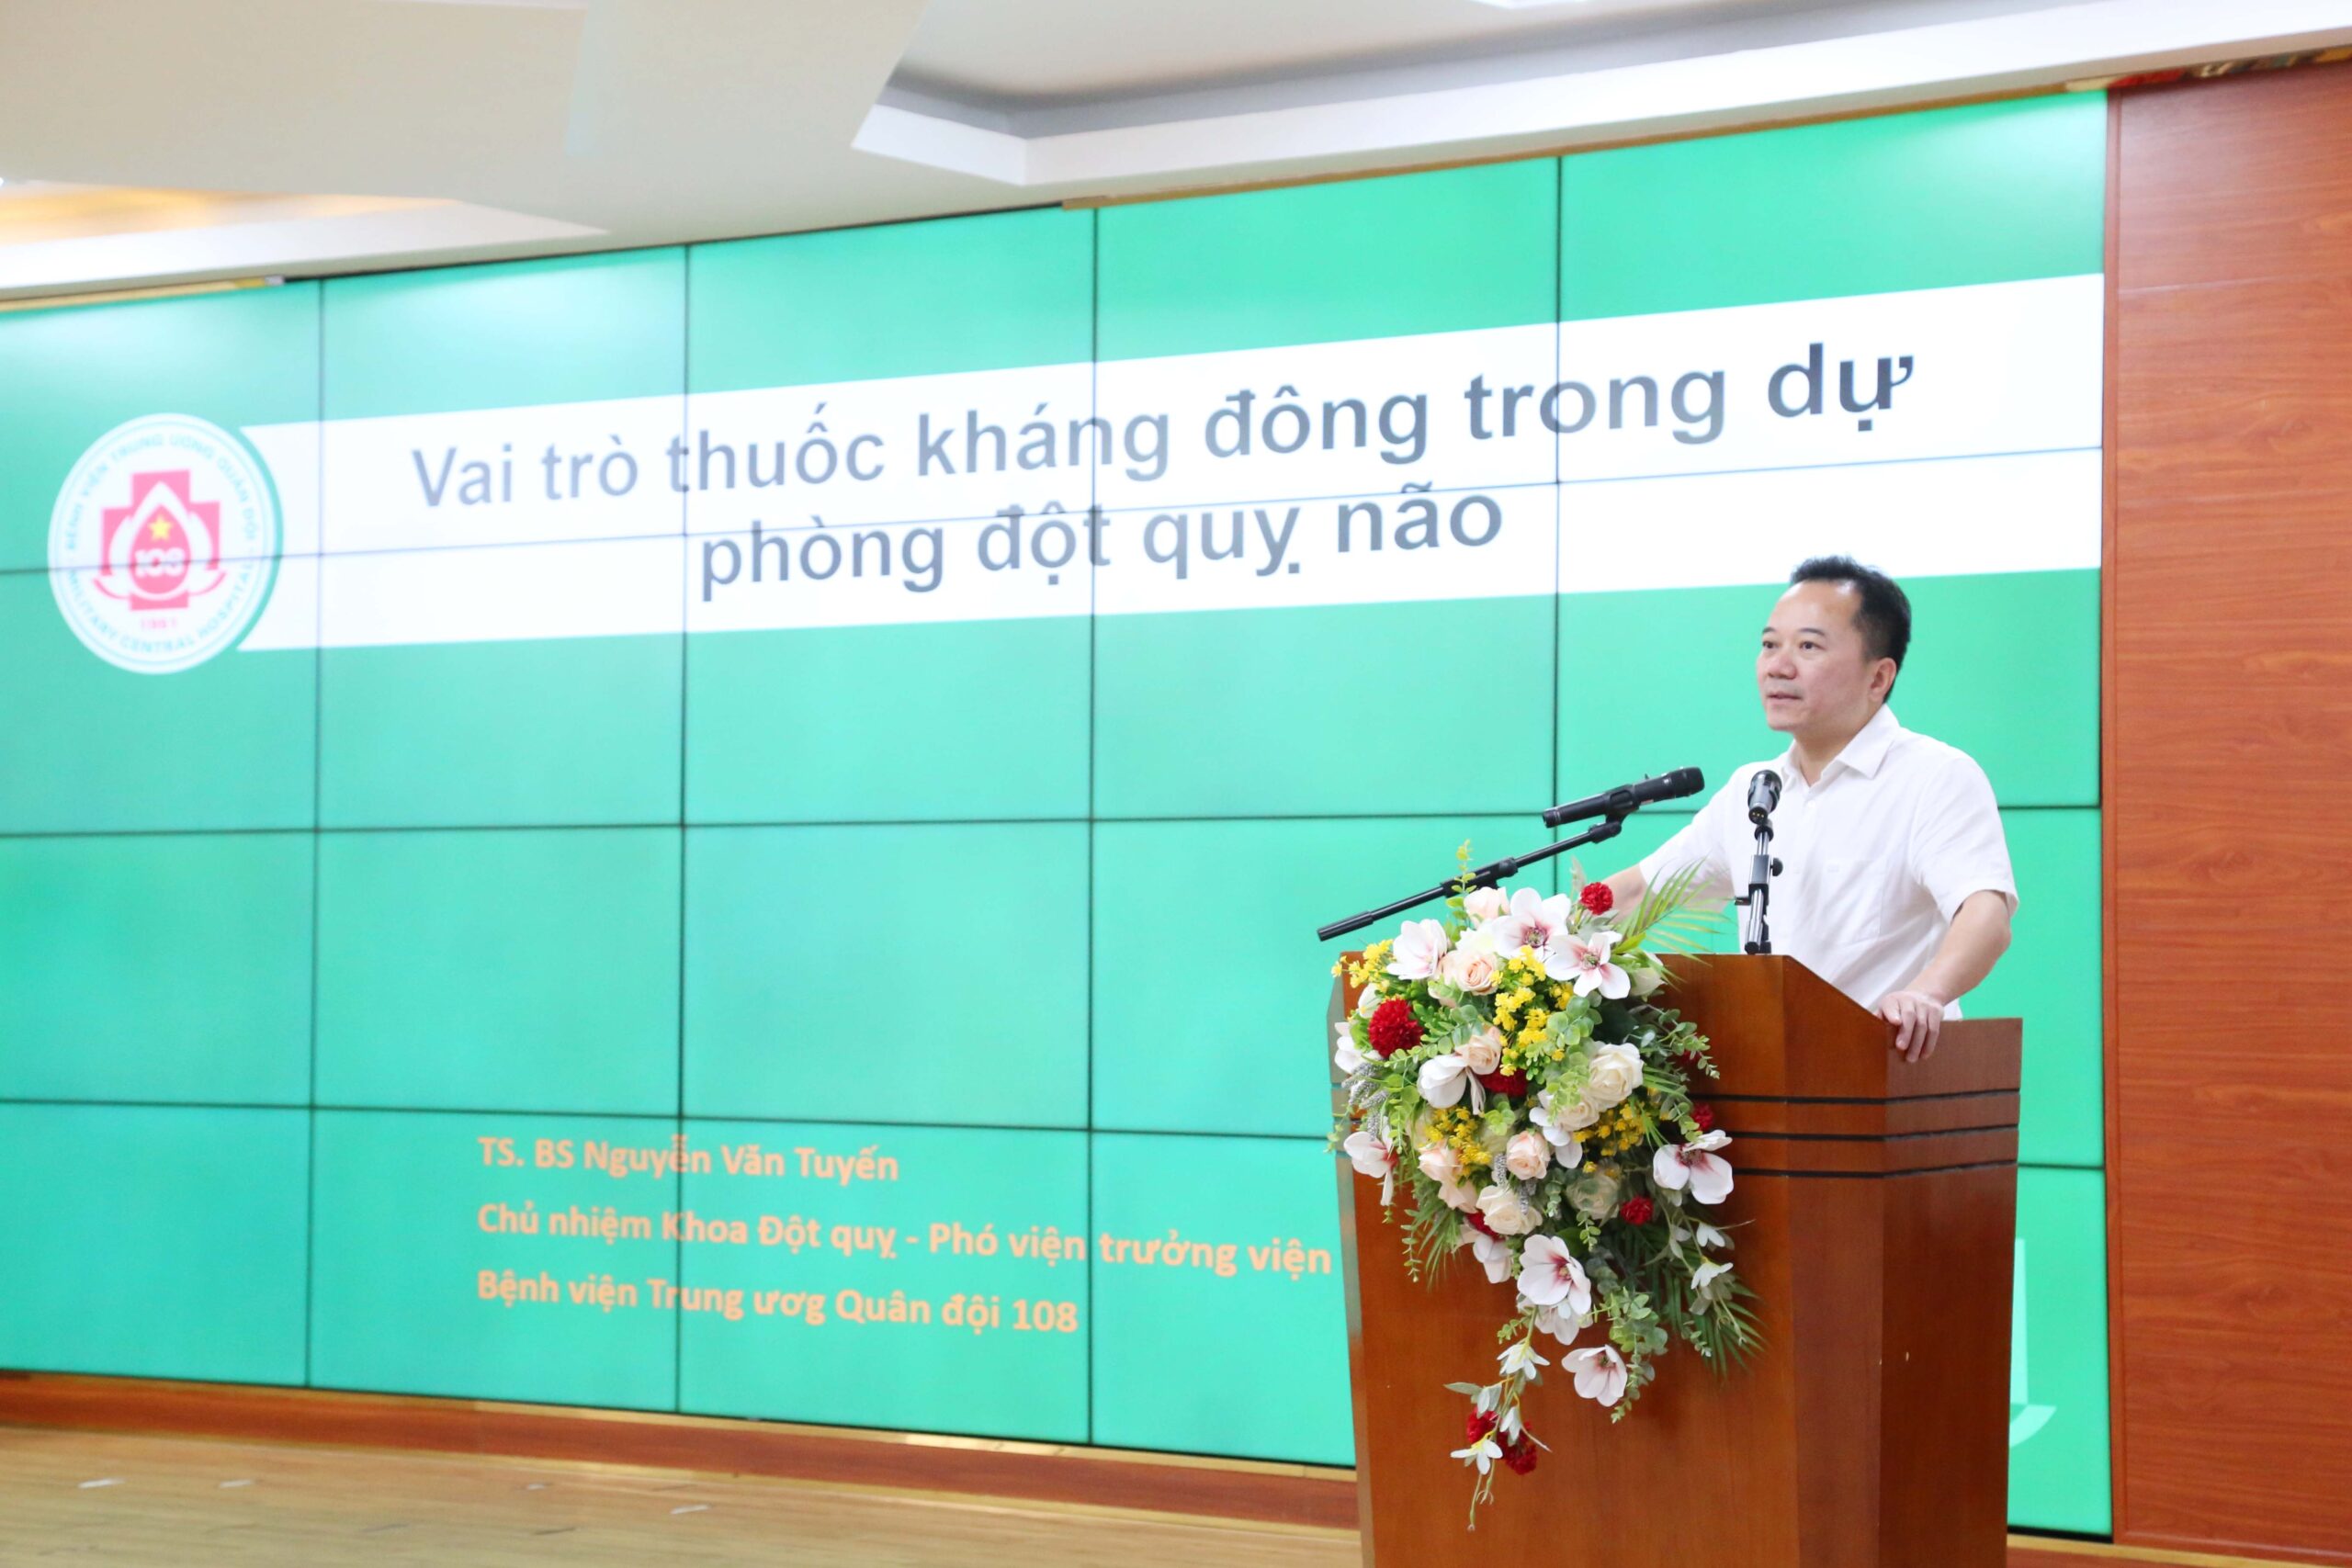 TS.BS Nguyễn Văn Tuyến - Giám đốc Trung tâm Đột quỵ - Bệnh viện Trung ương Quân đội 108 trình bày bài chia sẻ tại chương trình